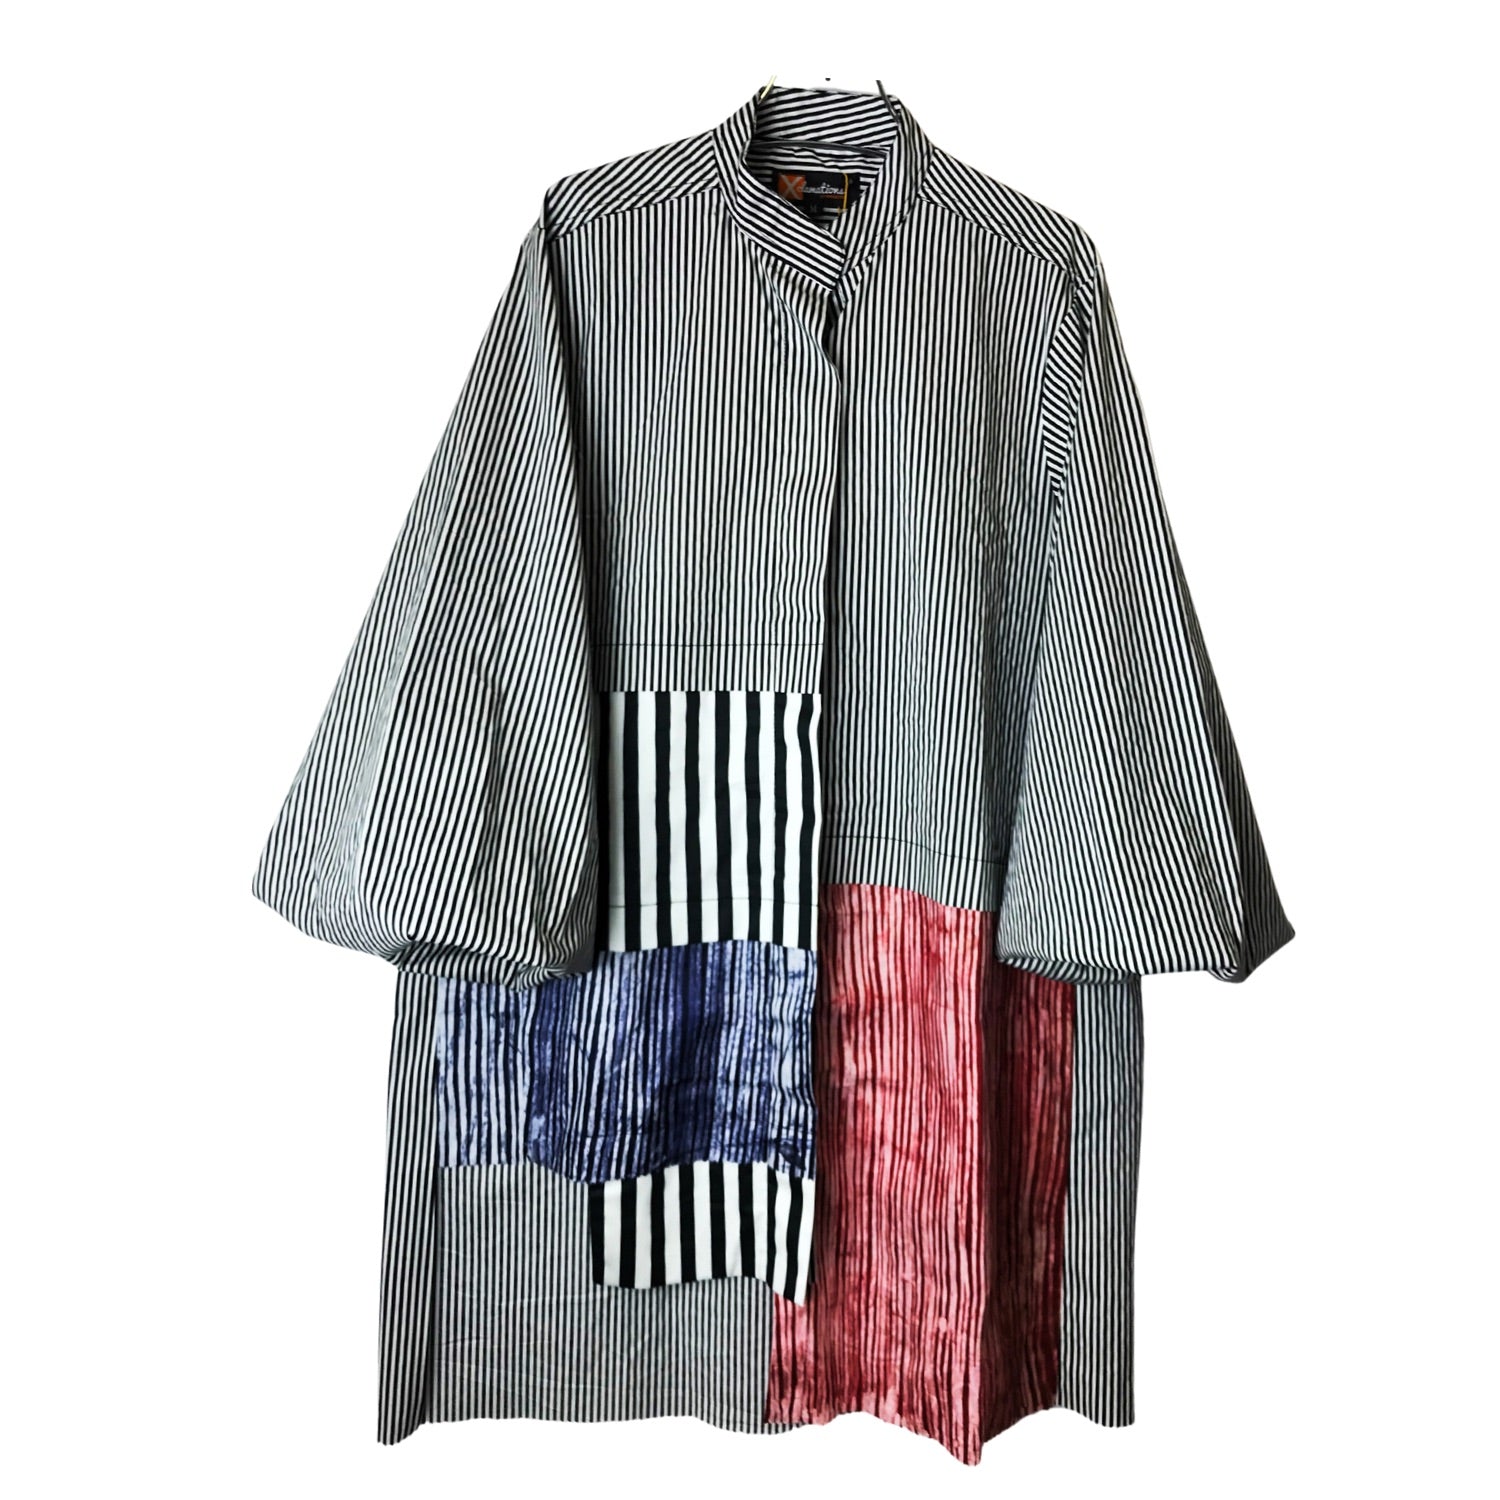 Women's Tunic Shirt - Shero Tunic in Pinstripe and Batik Mixed Print